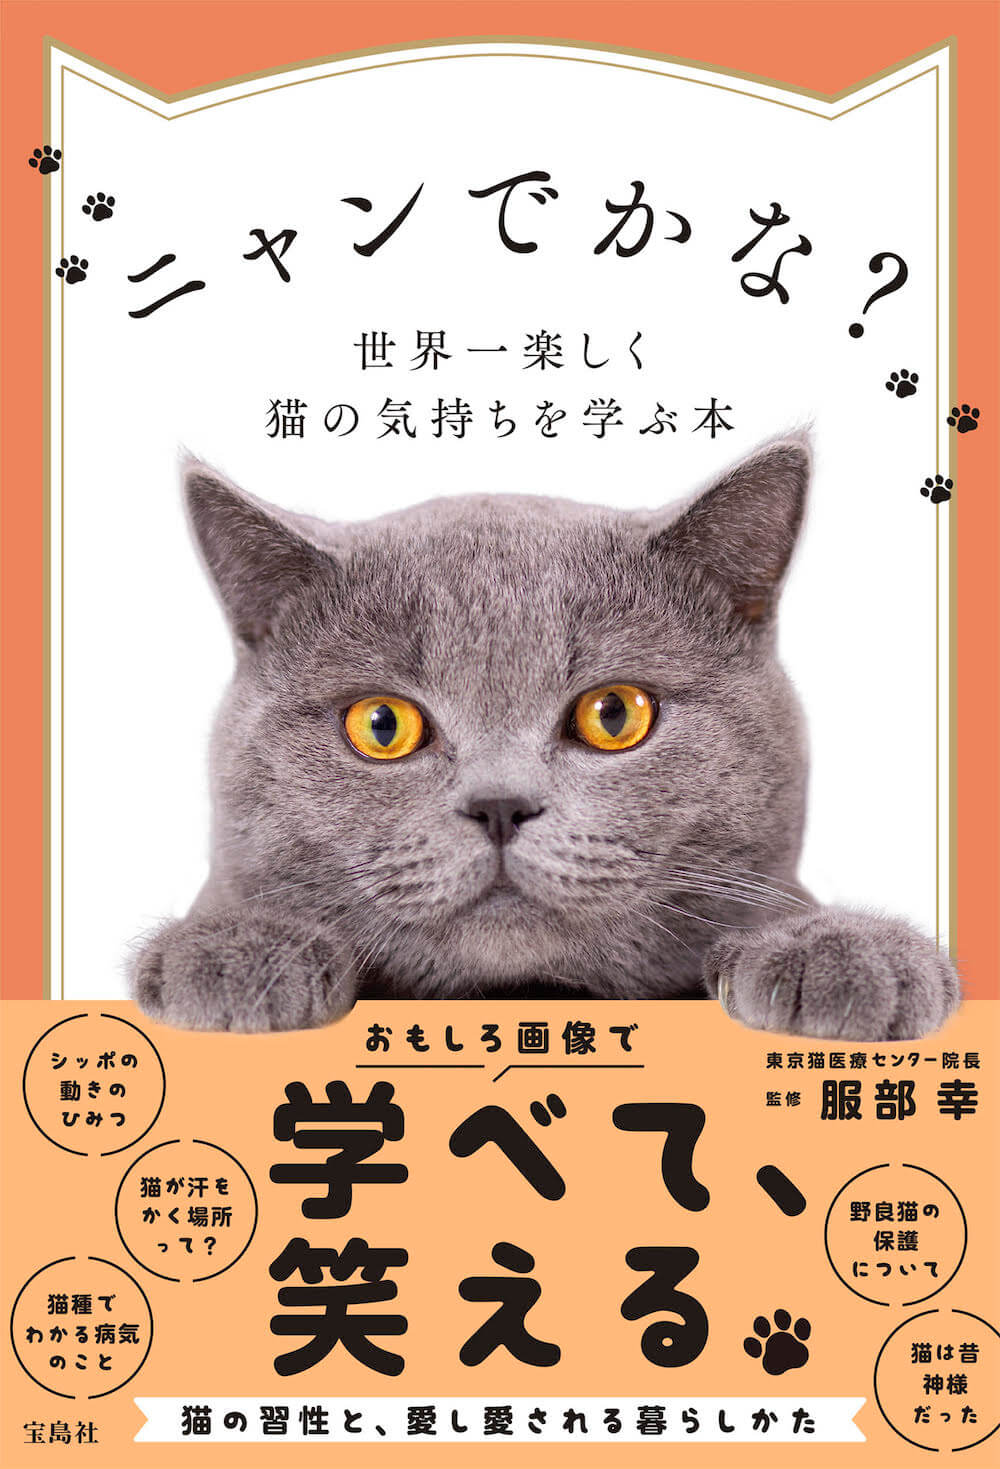 「ニャンでかな? 世界一楽しく猫の気持ちを学ぶ本」表紙イメージ